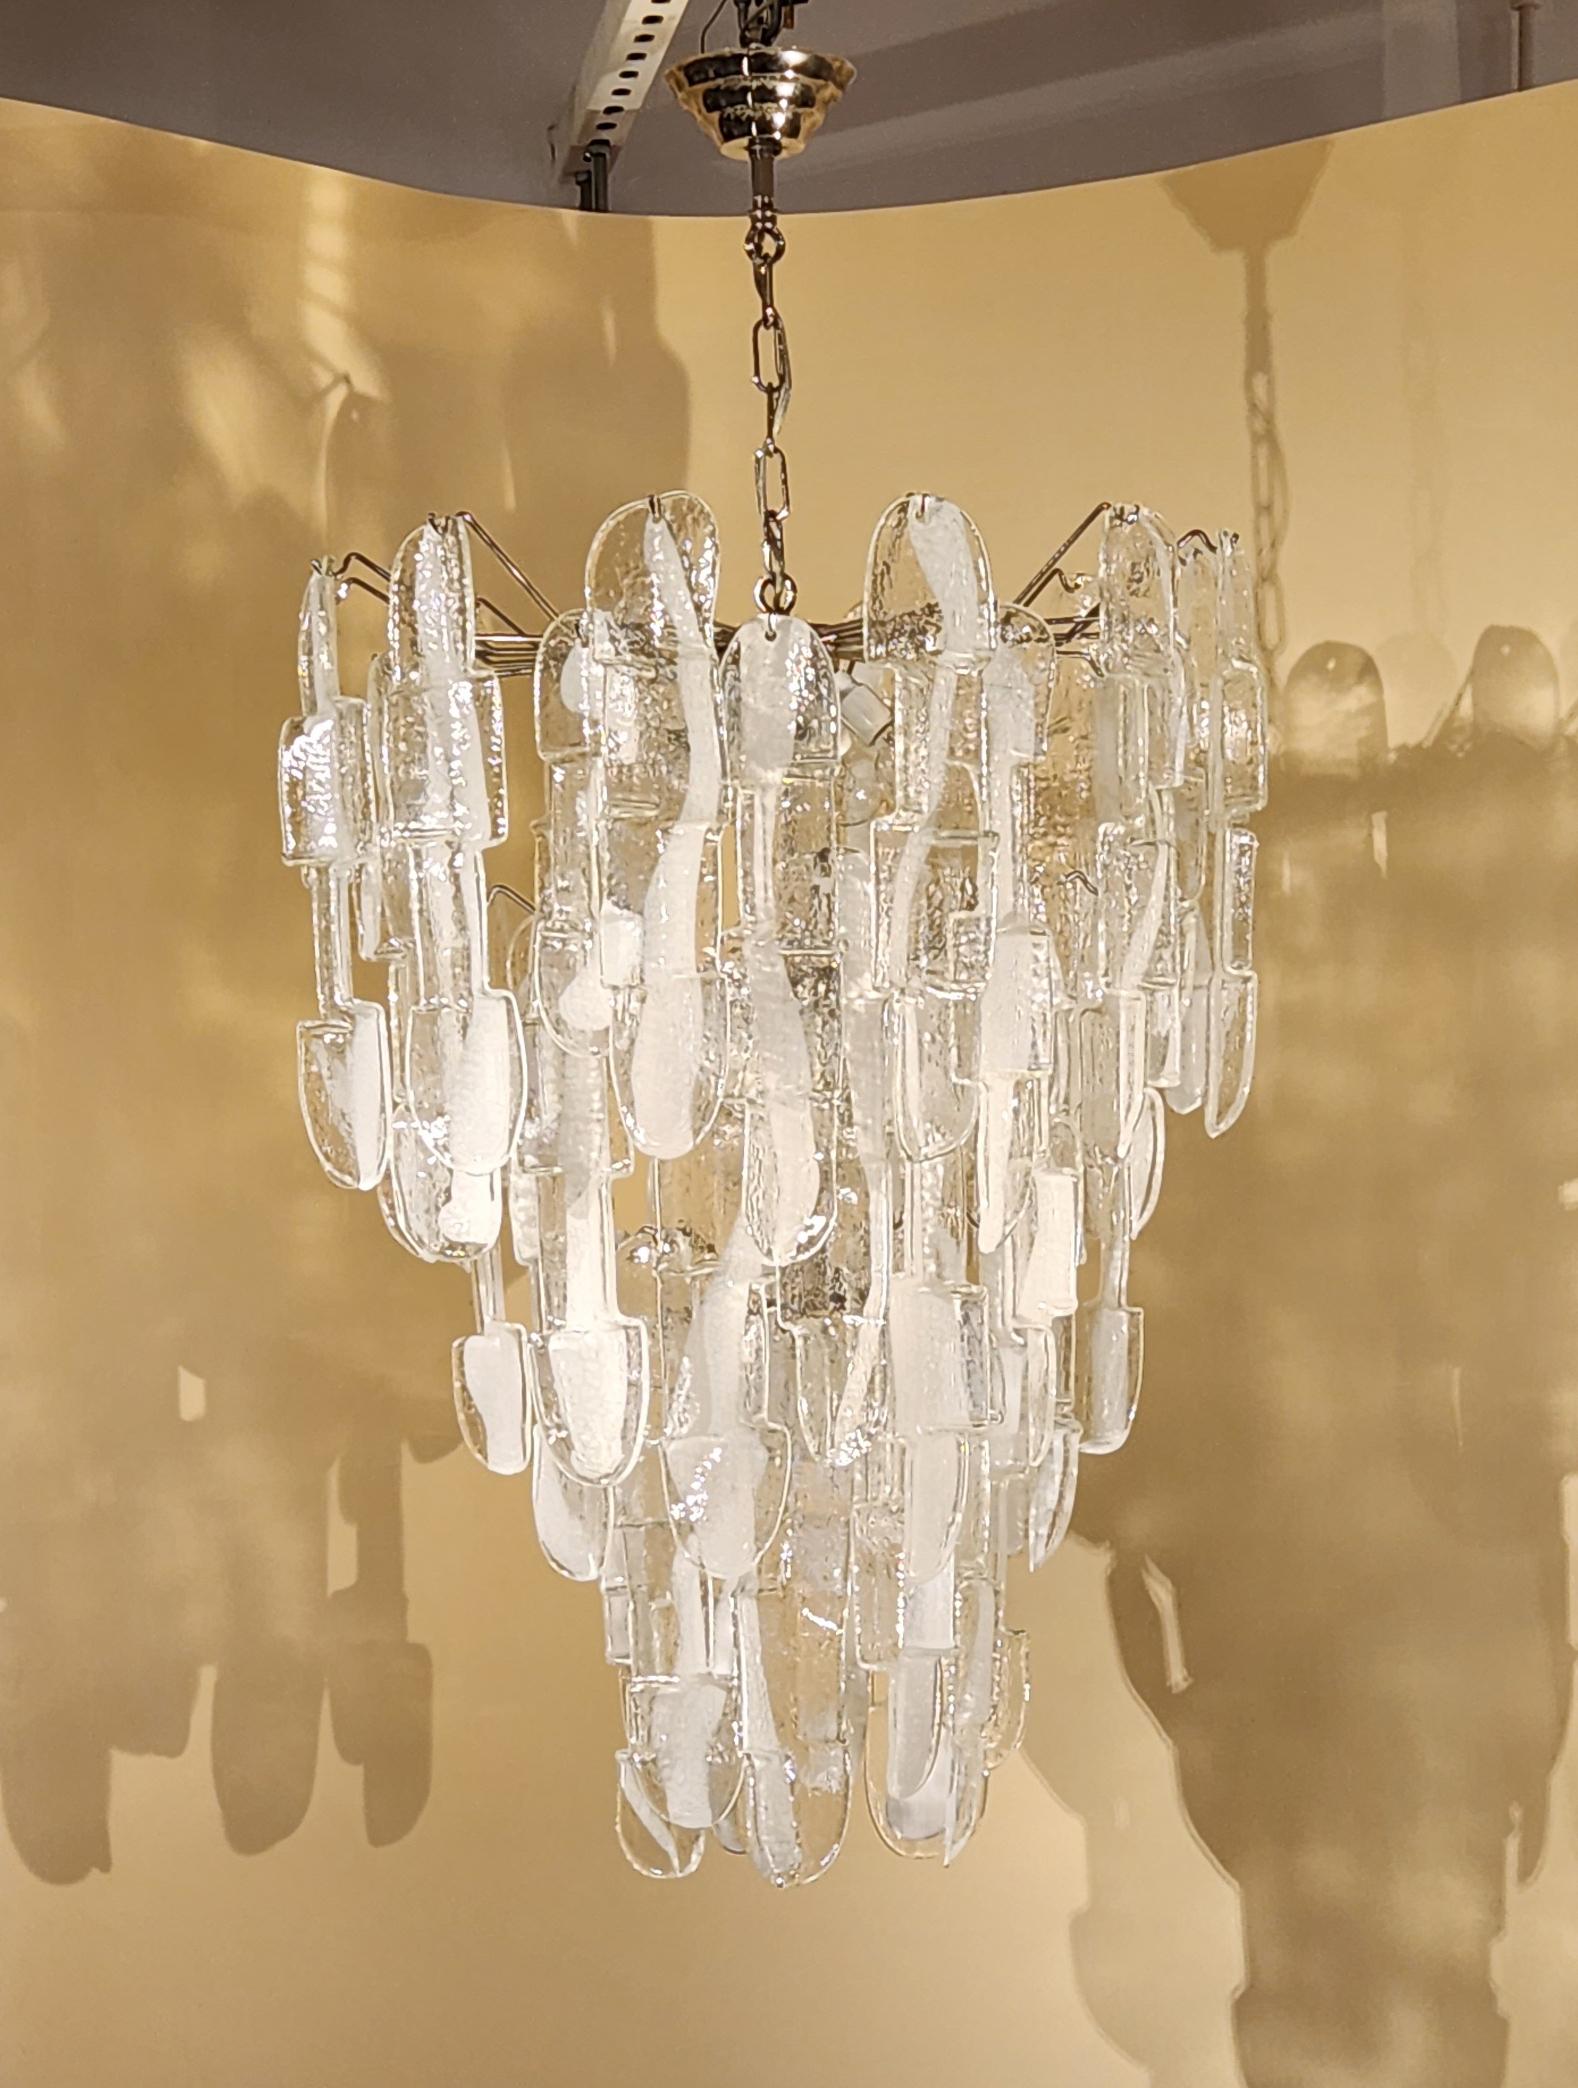 Magnifique lustre en verre de Murano d'Italie, vers 1960. Le lustre est encadré de chrome et contient 50 grands prismes en verre d'art. Il faut 8 ampoules.